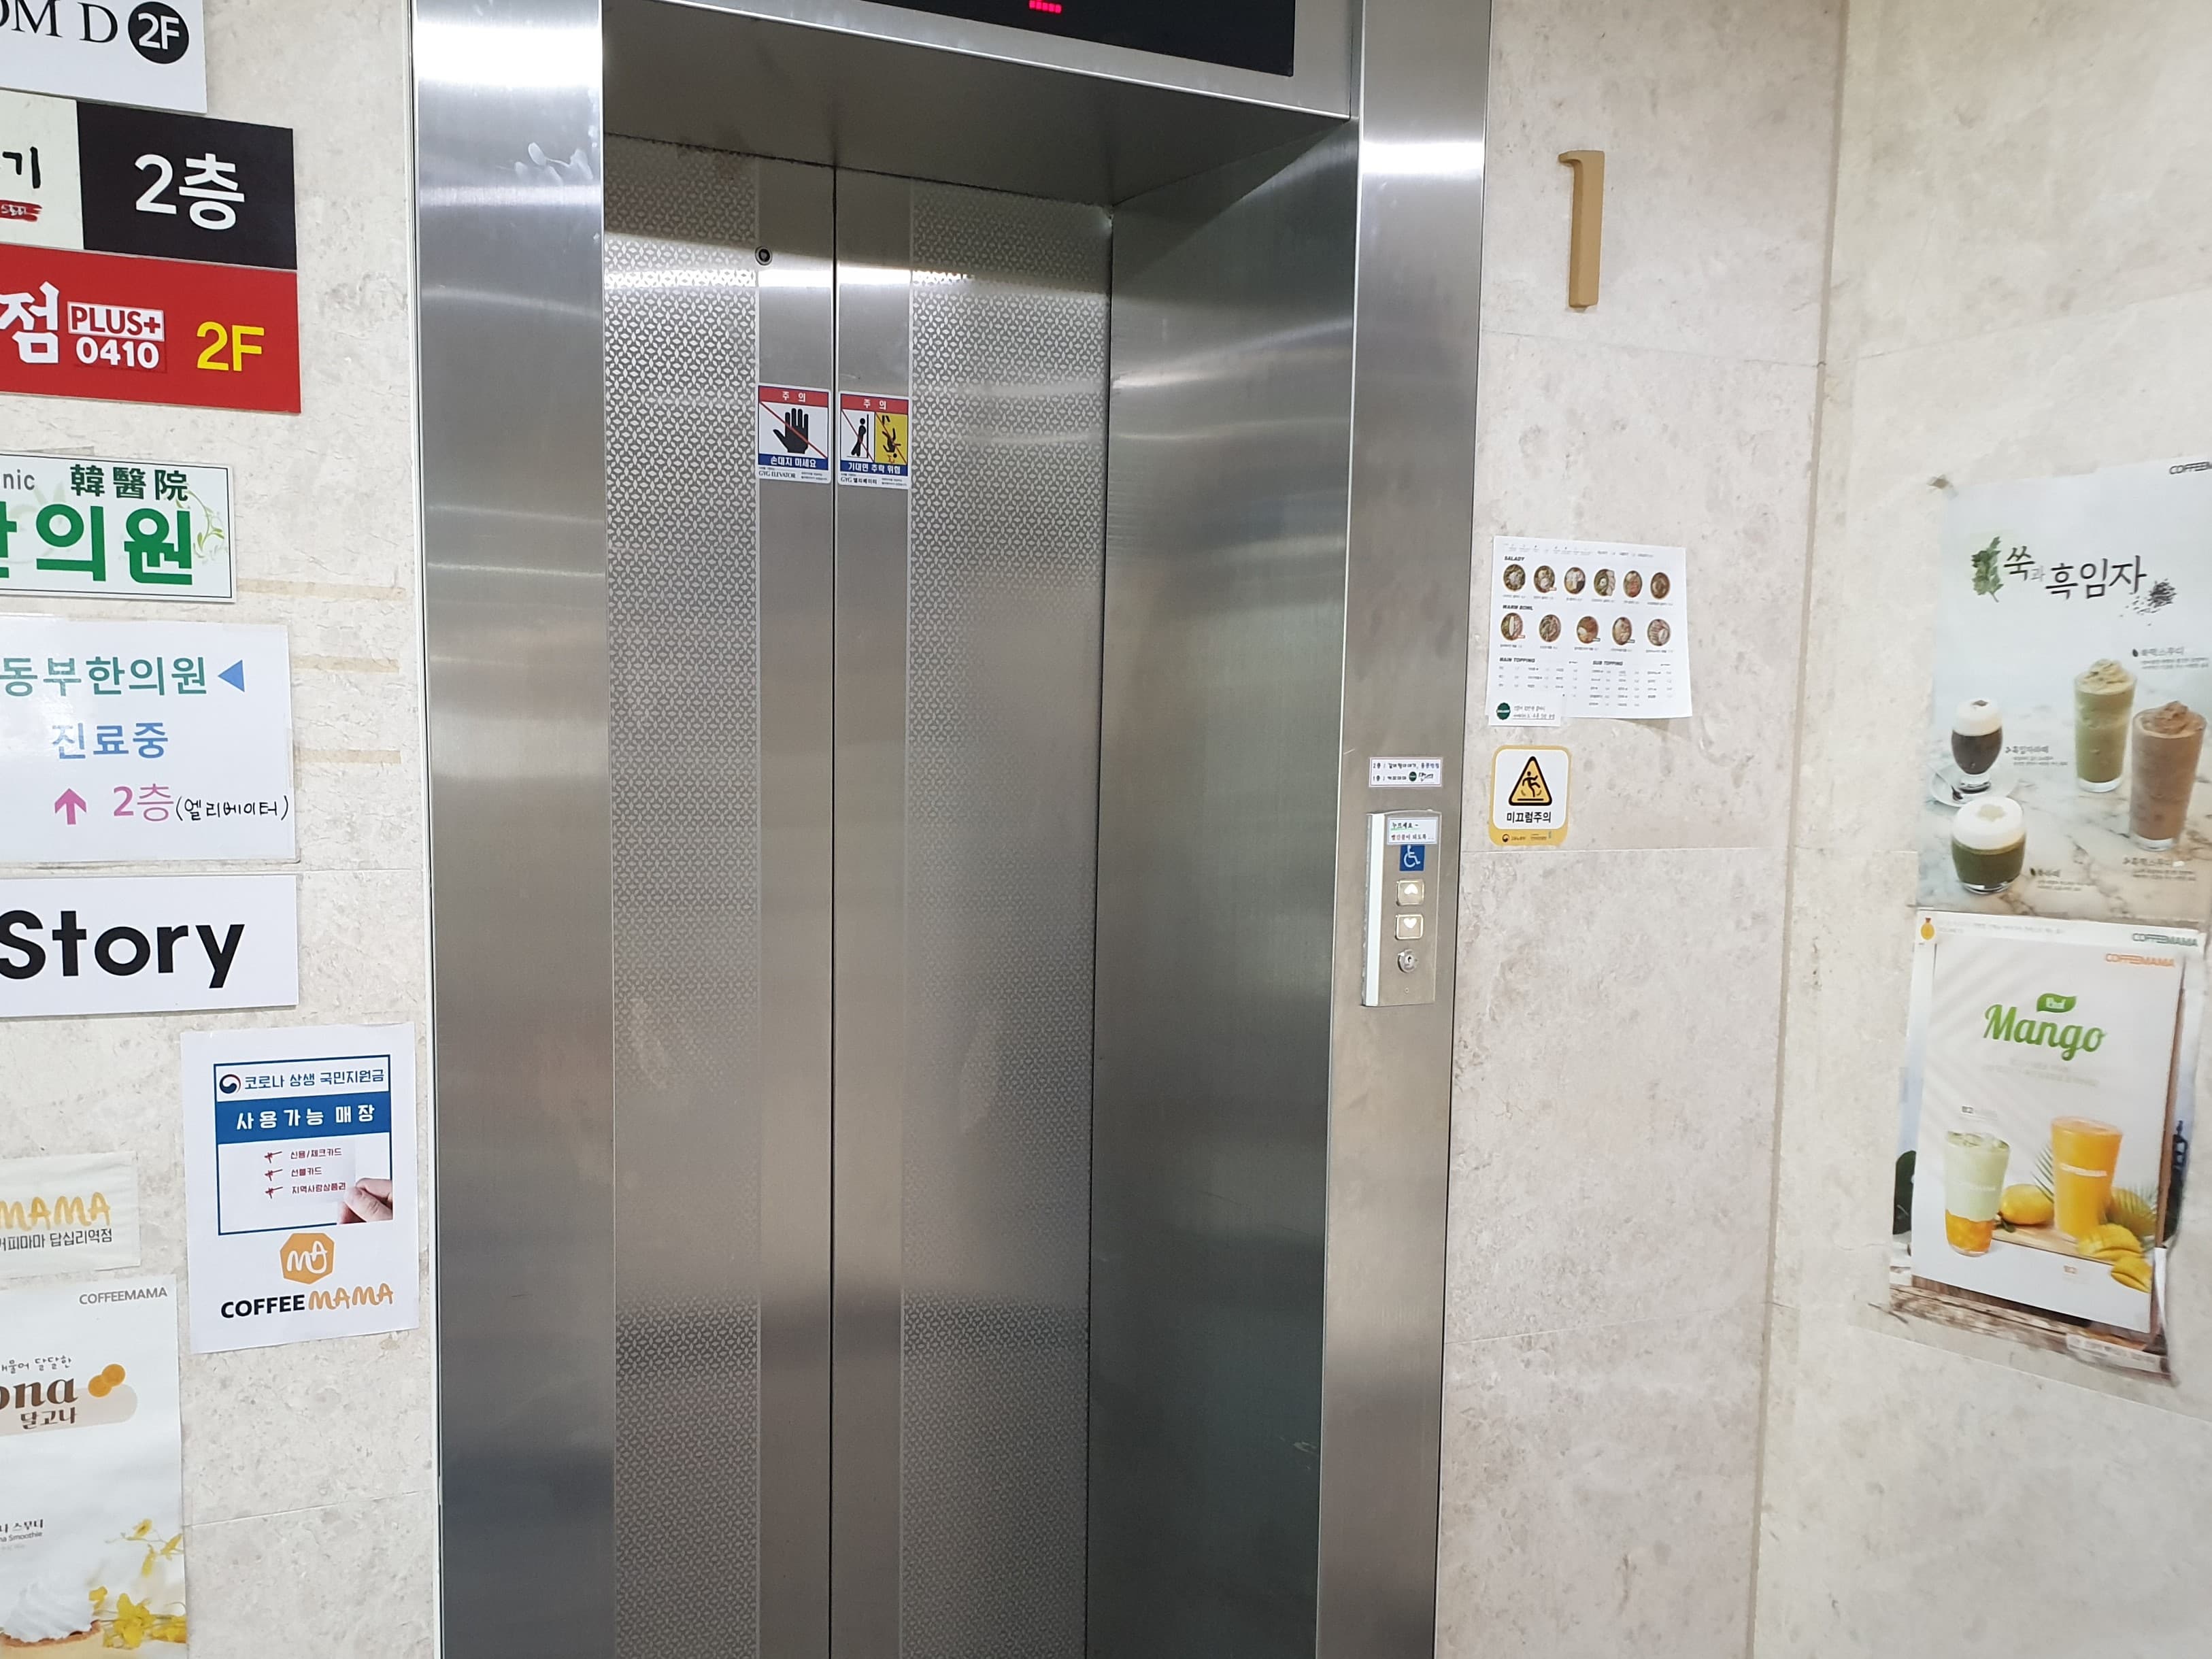 엘리베이터 0 : 시각장애인을 위한 점자가 버튼에 설치된 엘리베이터 외부 전경 